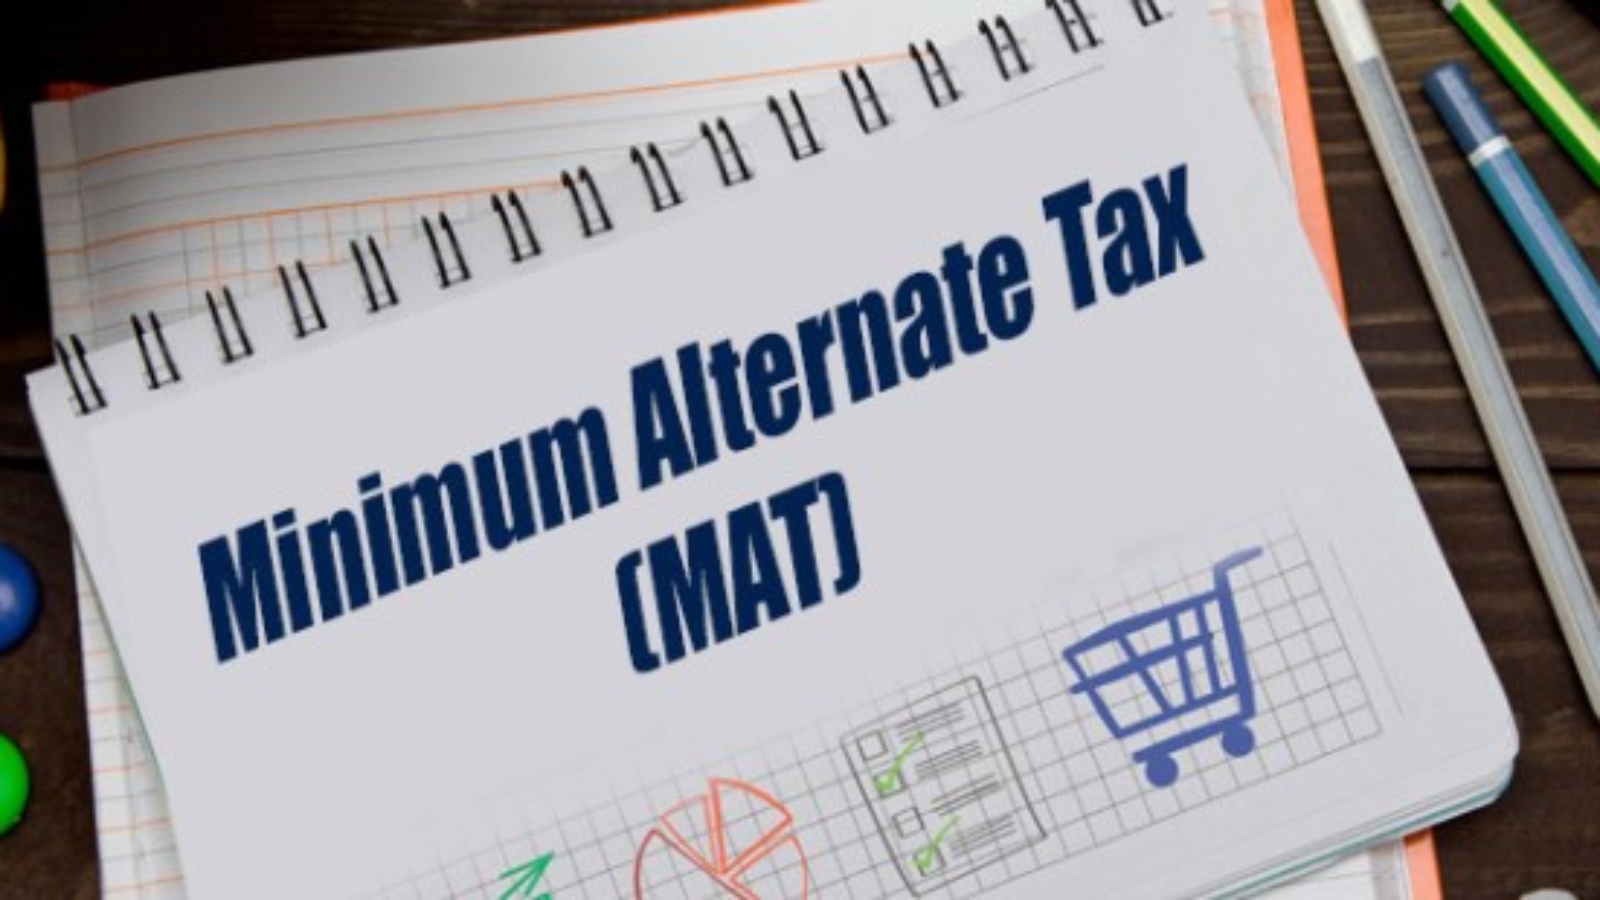 Minimum Alternative Tax